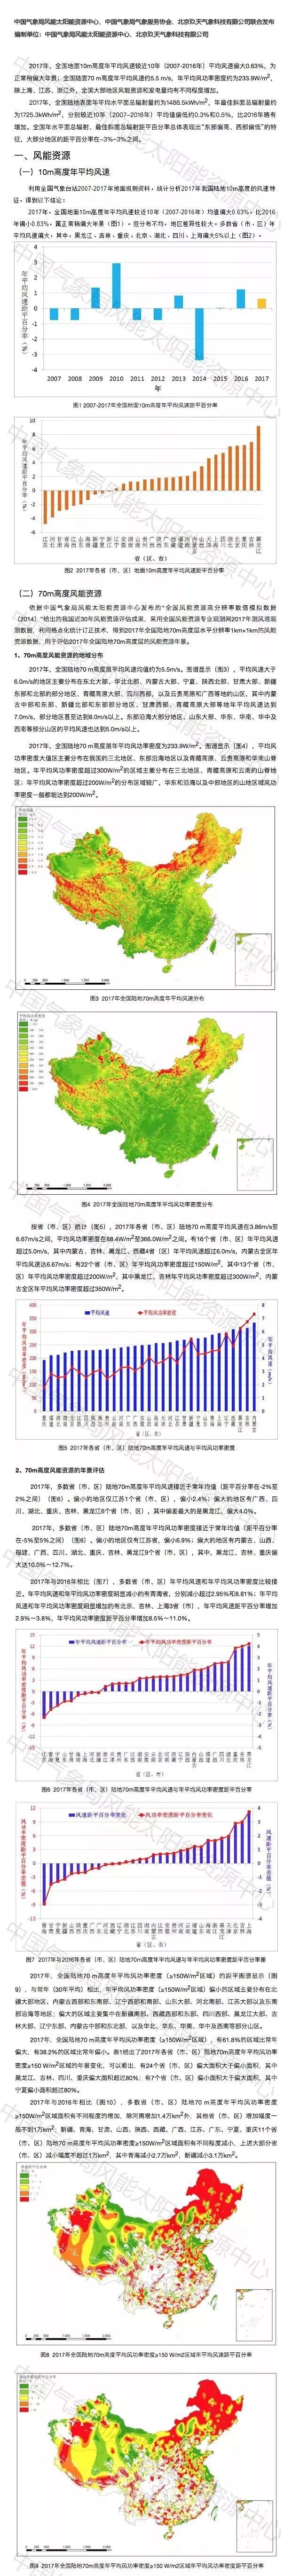 2017年中国风能太阳能资源年景公报发布